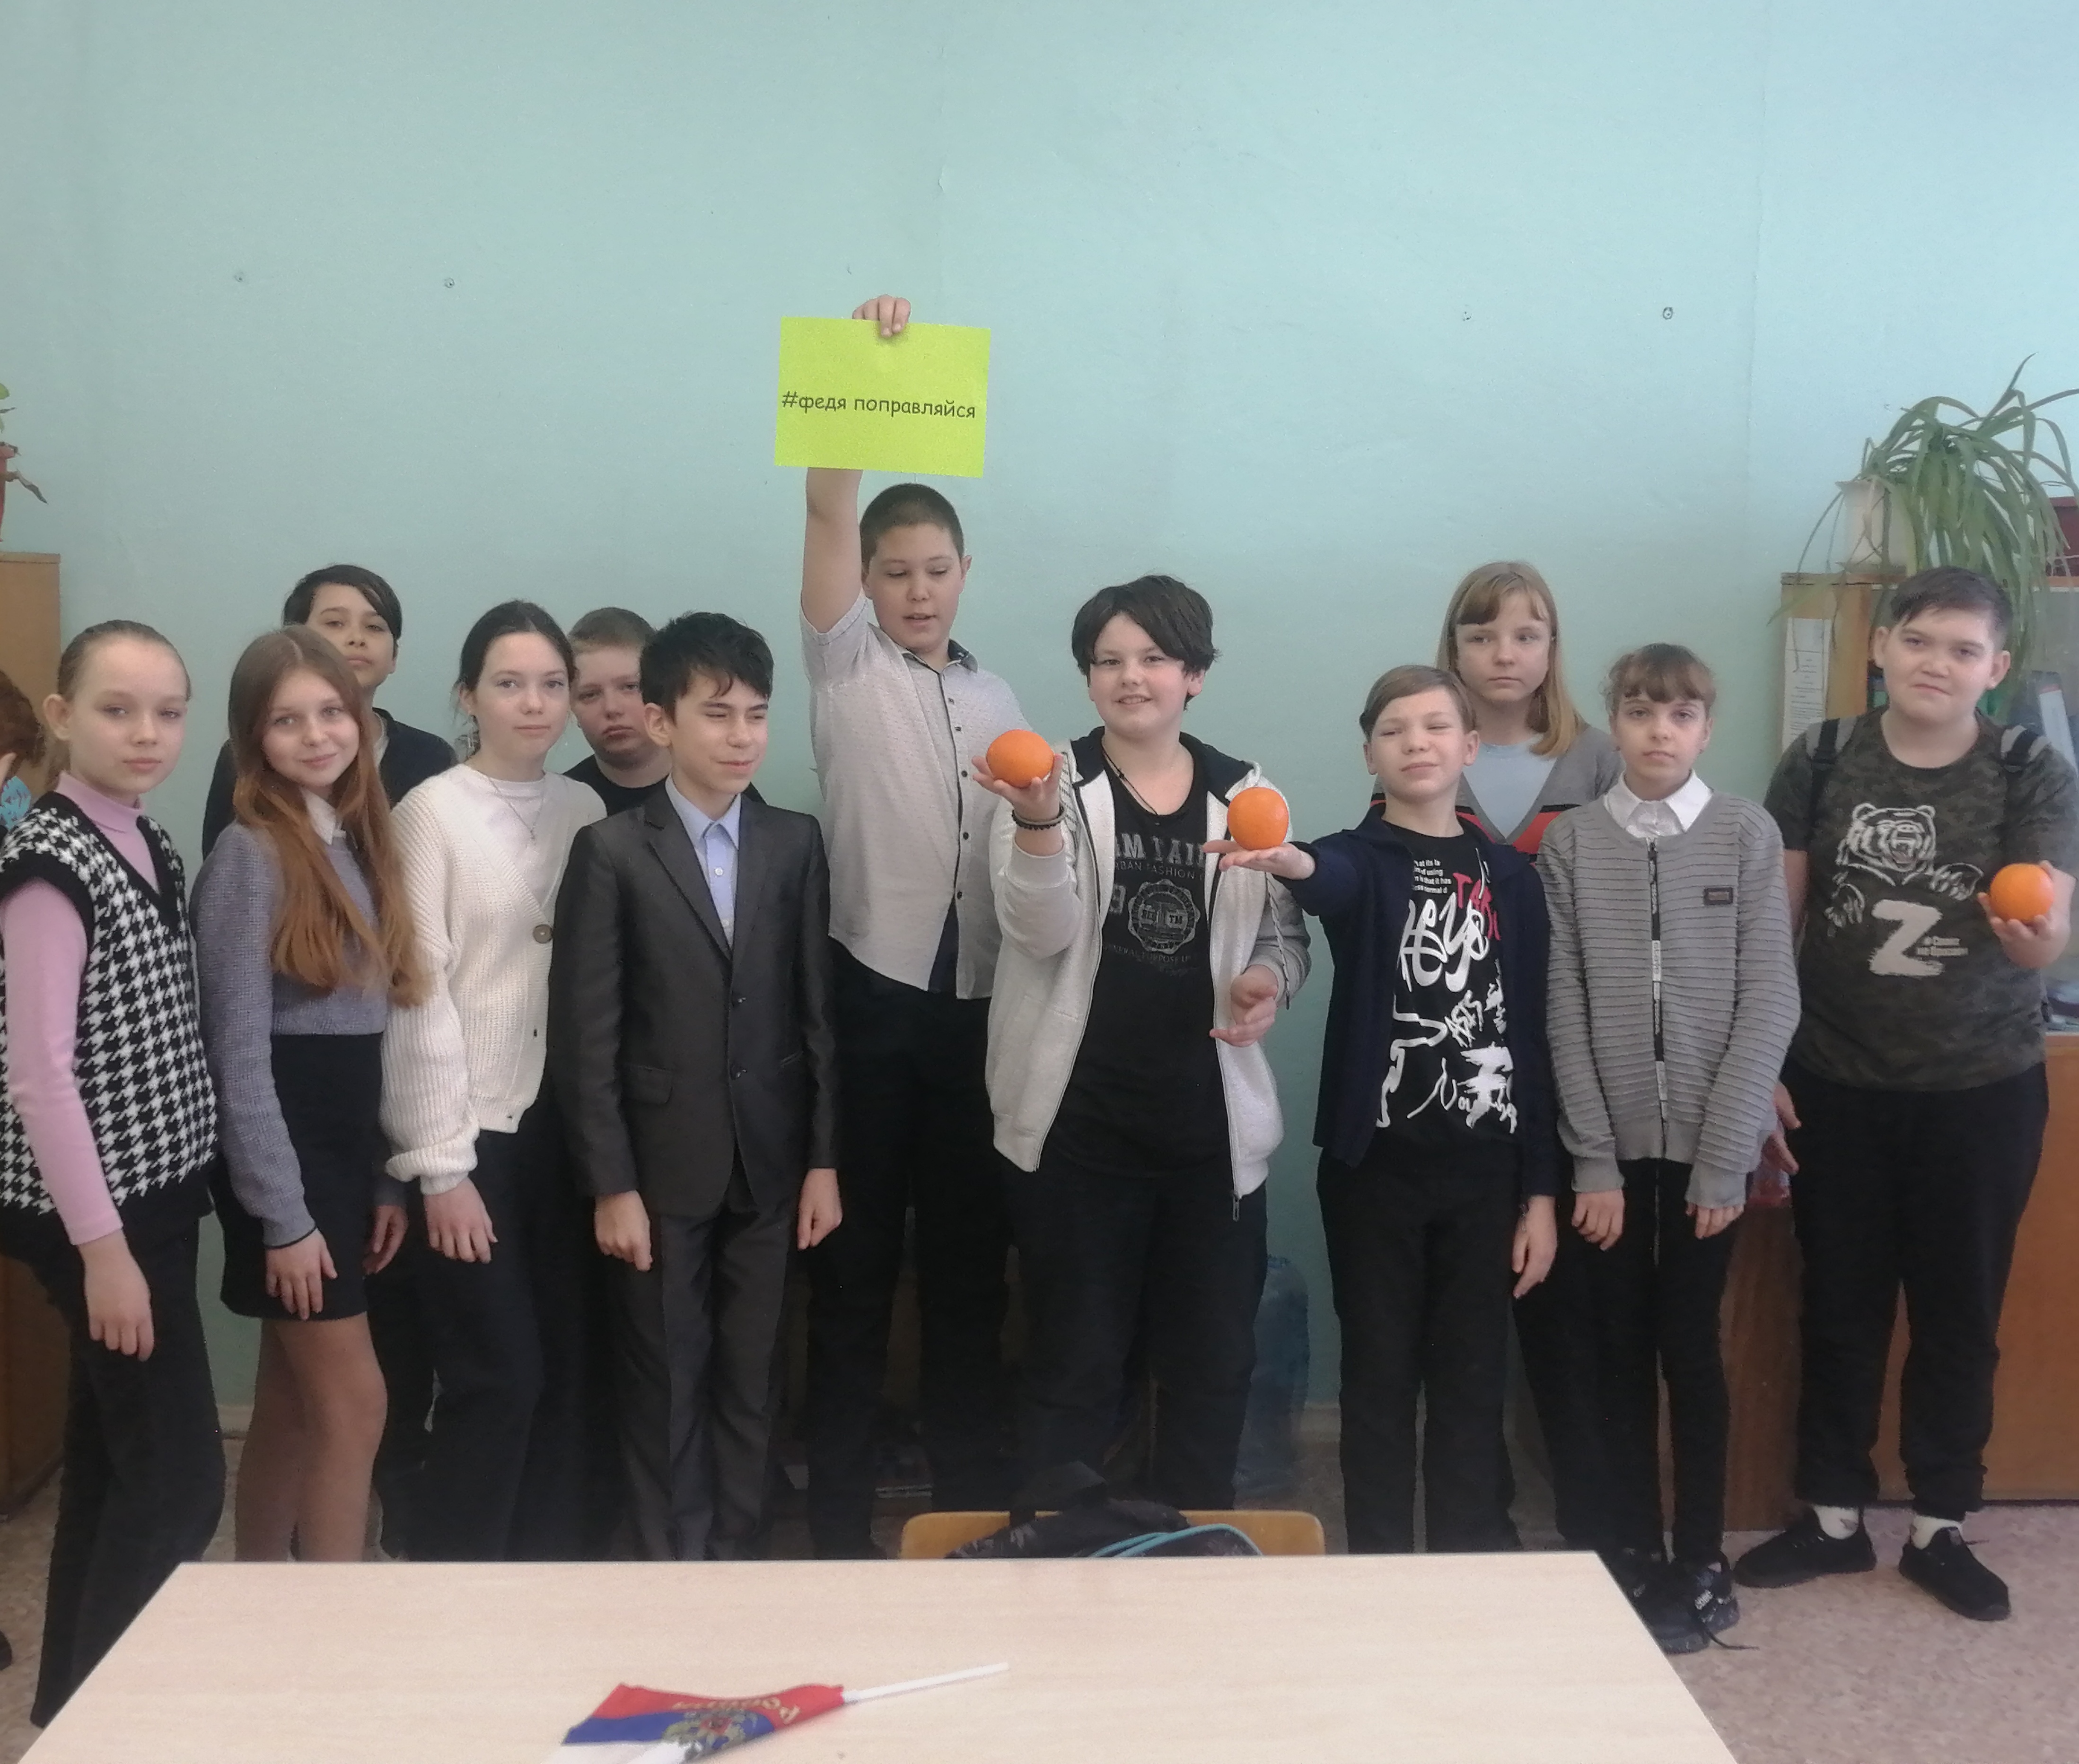 Ученики принимают участие во всероссийском флешмобе #ФедяПоправляйся.